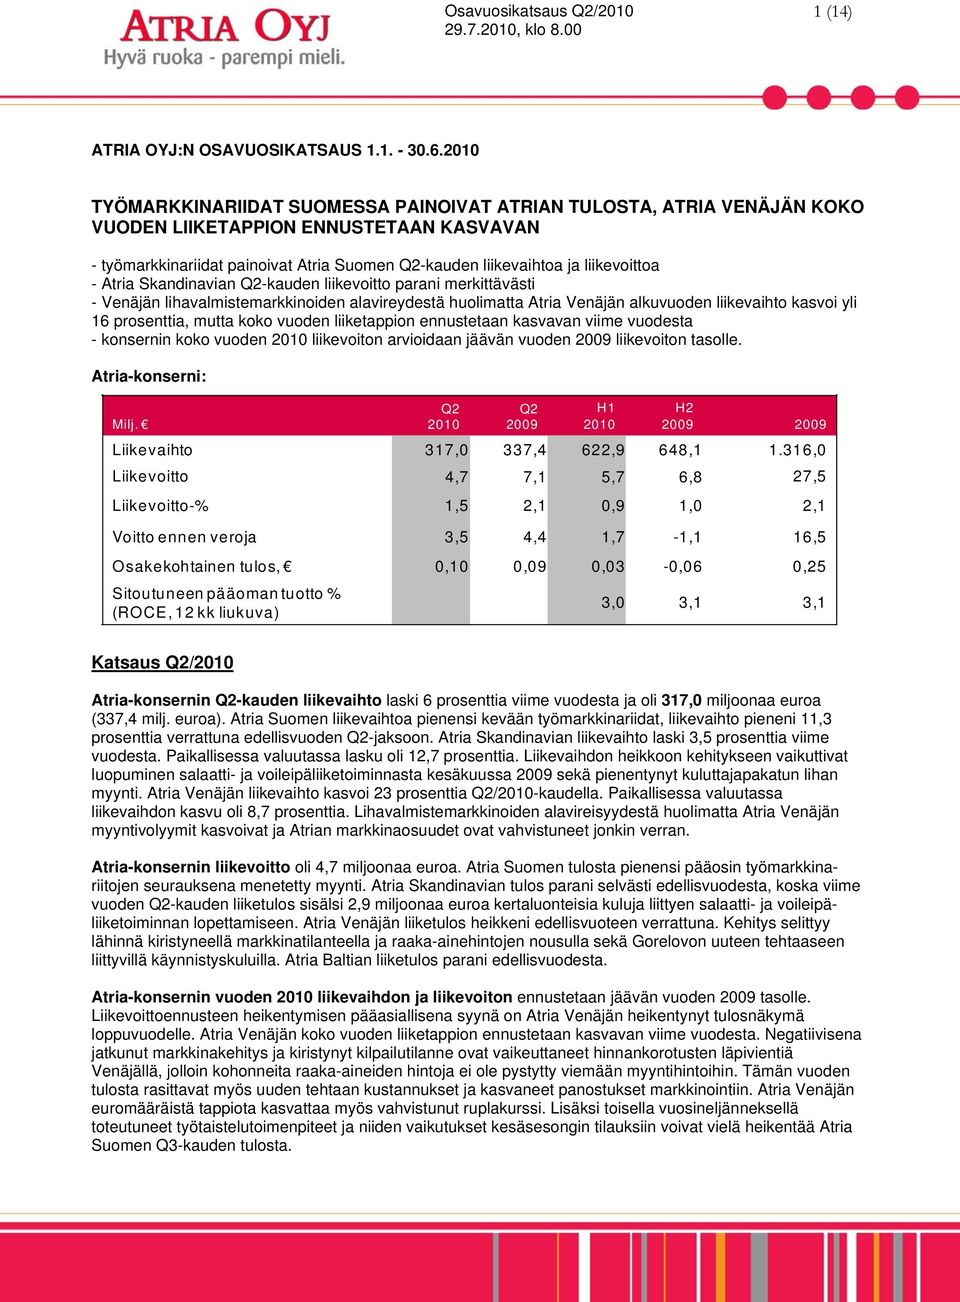 Atria Skandinavian -kauden liikevoitto parani merkittävästi - Venäjän lihavalmistemarkkinoiden alavireydestä huolimatta Atria Venäjän alkuvuoden liikevaihto kasvoi yli 16 prosenttia, mutta koko